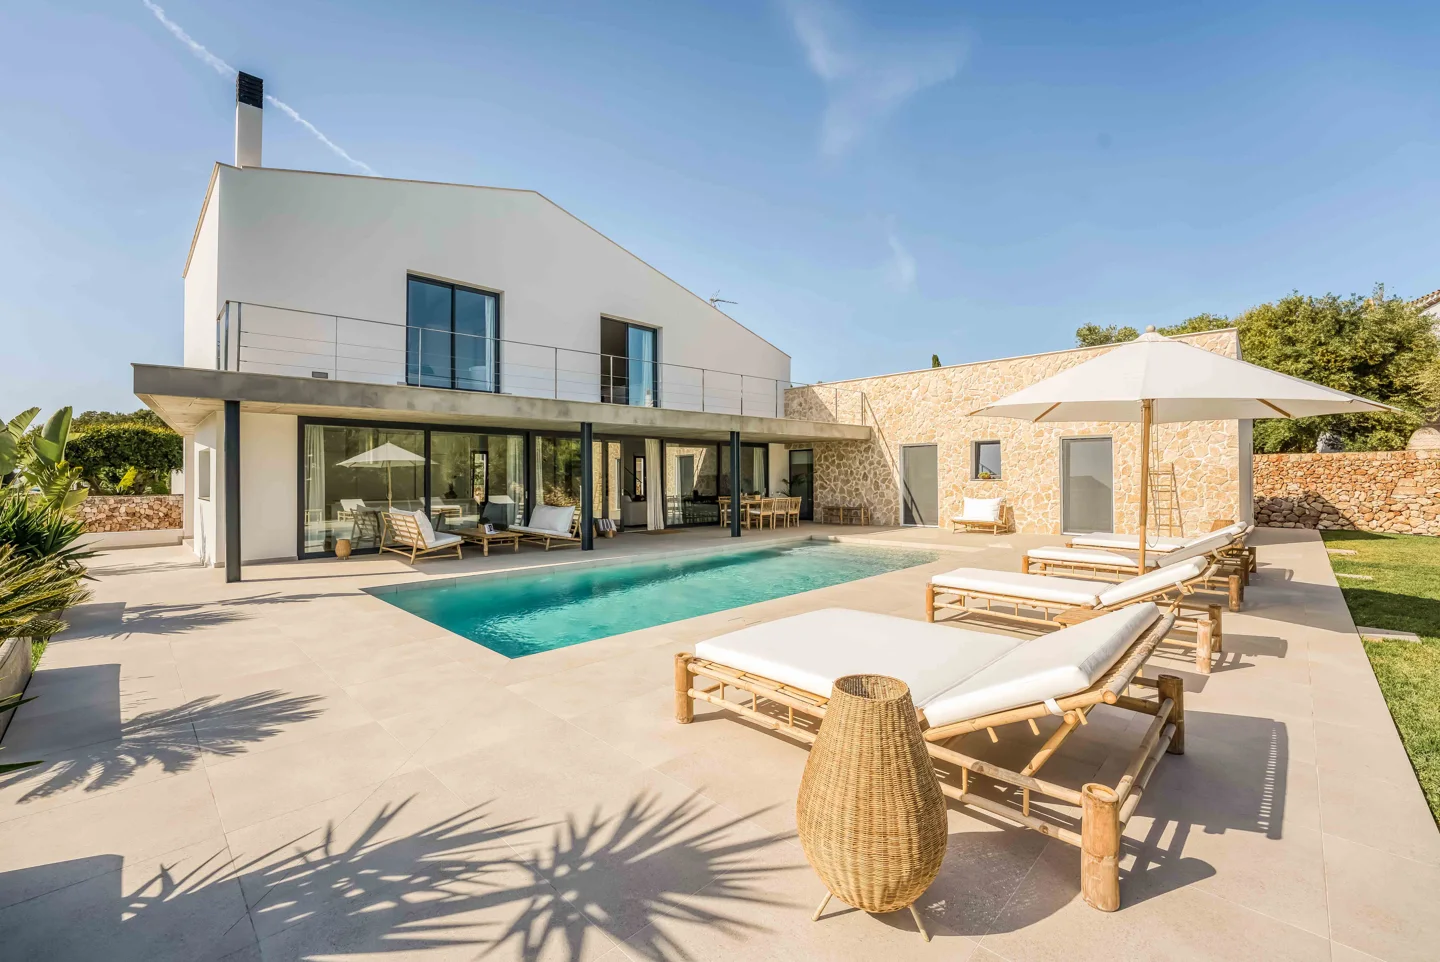 Ferienvermietung - Fantastische moderne Villa mit Schwimmbad in Sa Caleta, Menorca